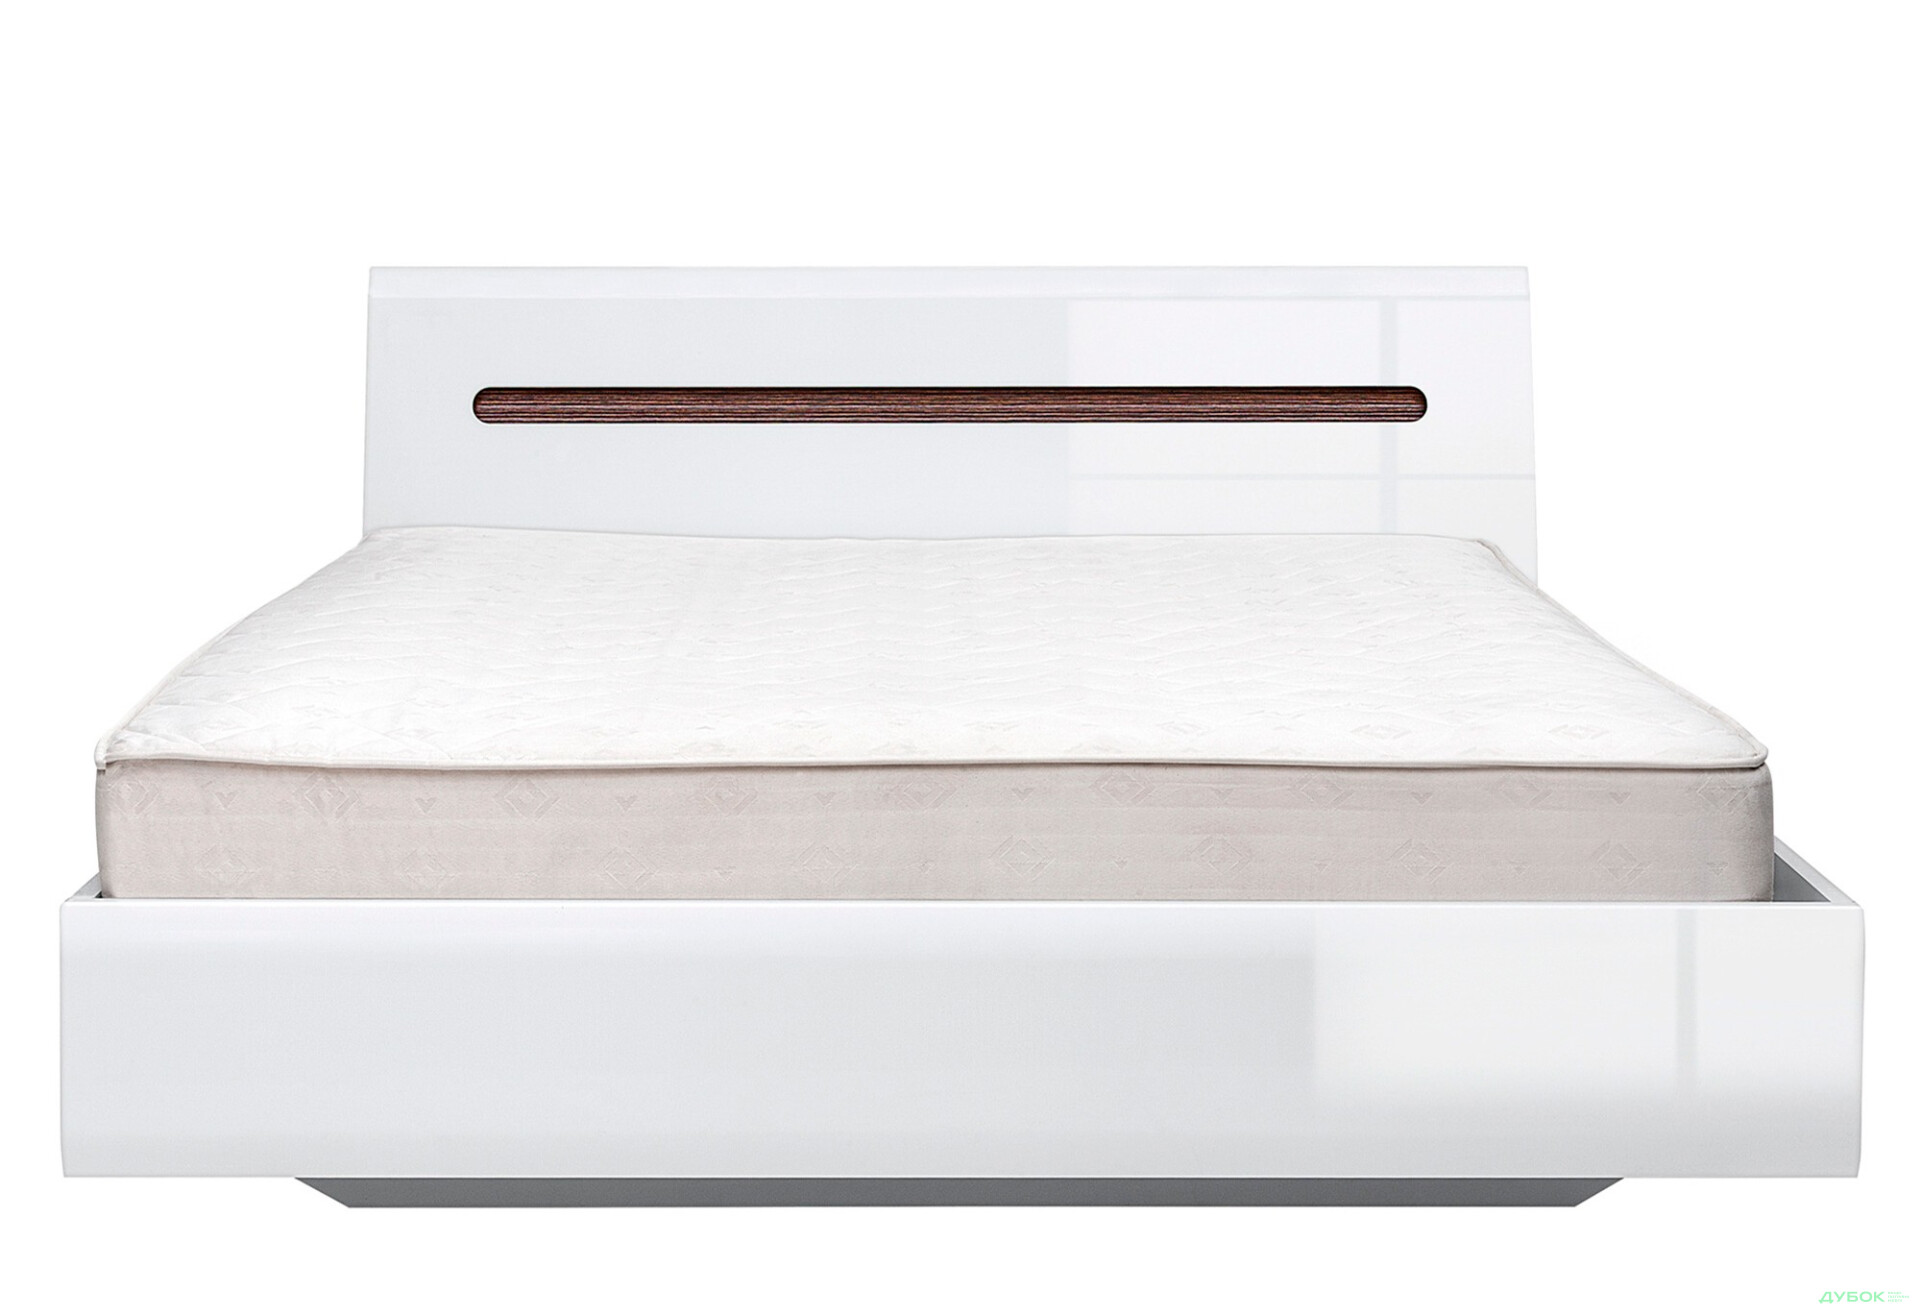 Фото 1 - Кровать ВМК Ацтека (без вклада) 160х200 см, белая